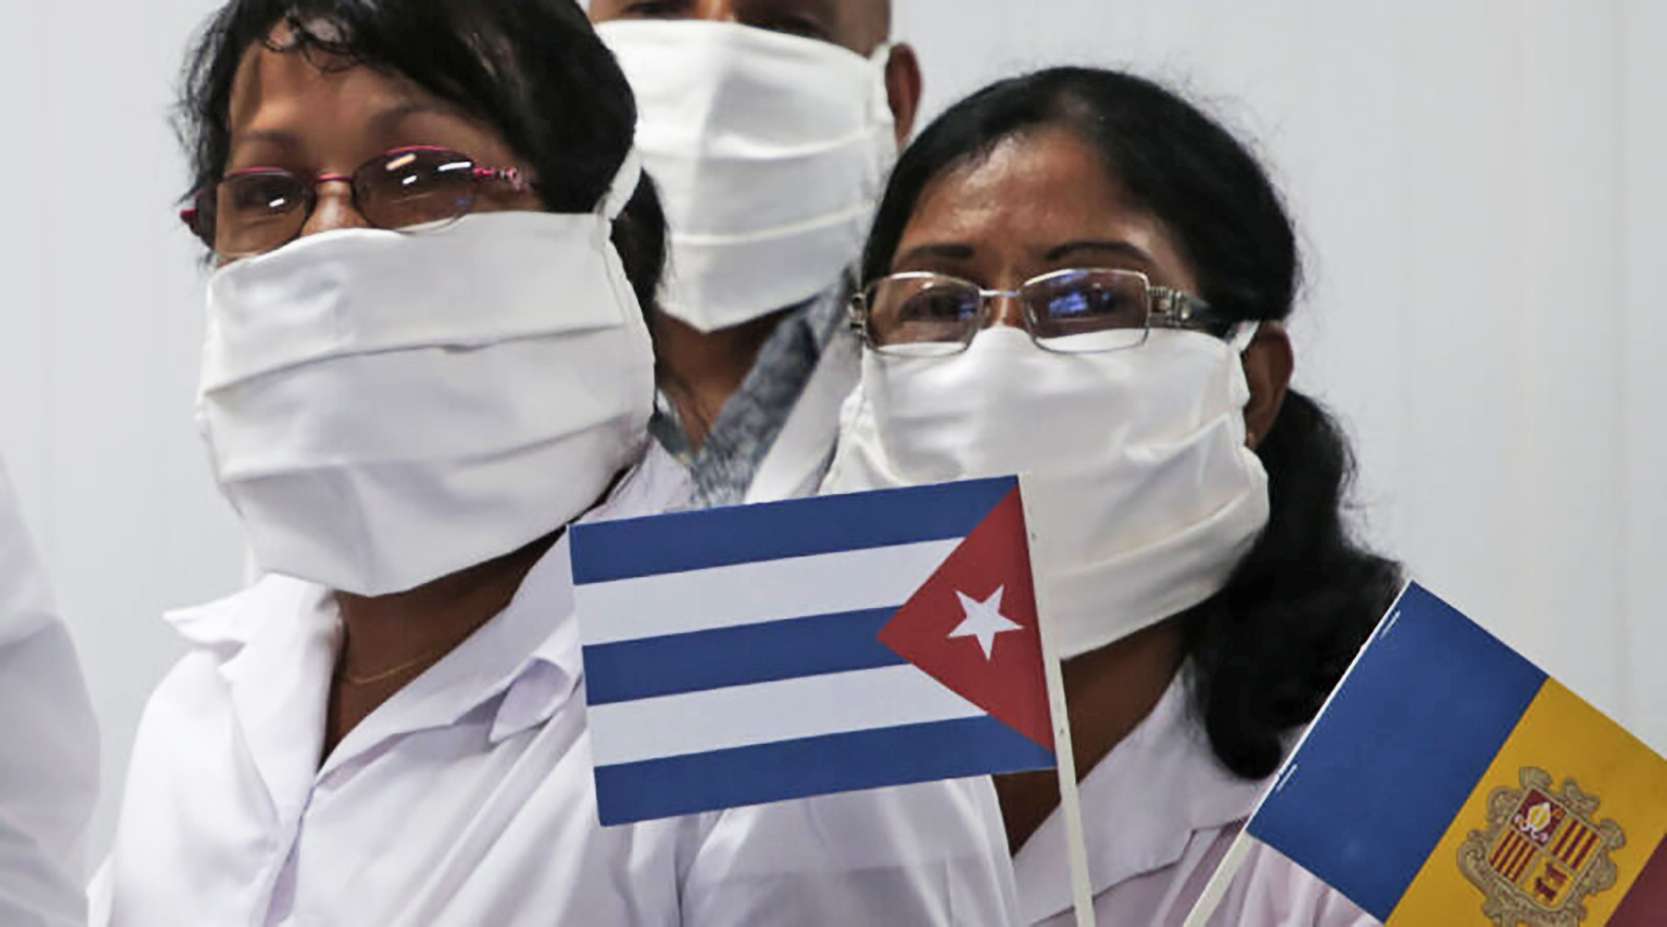 κουβανική ιατρική διεθνιστική βοήθεια κλείνει έξι δεκαετίες